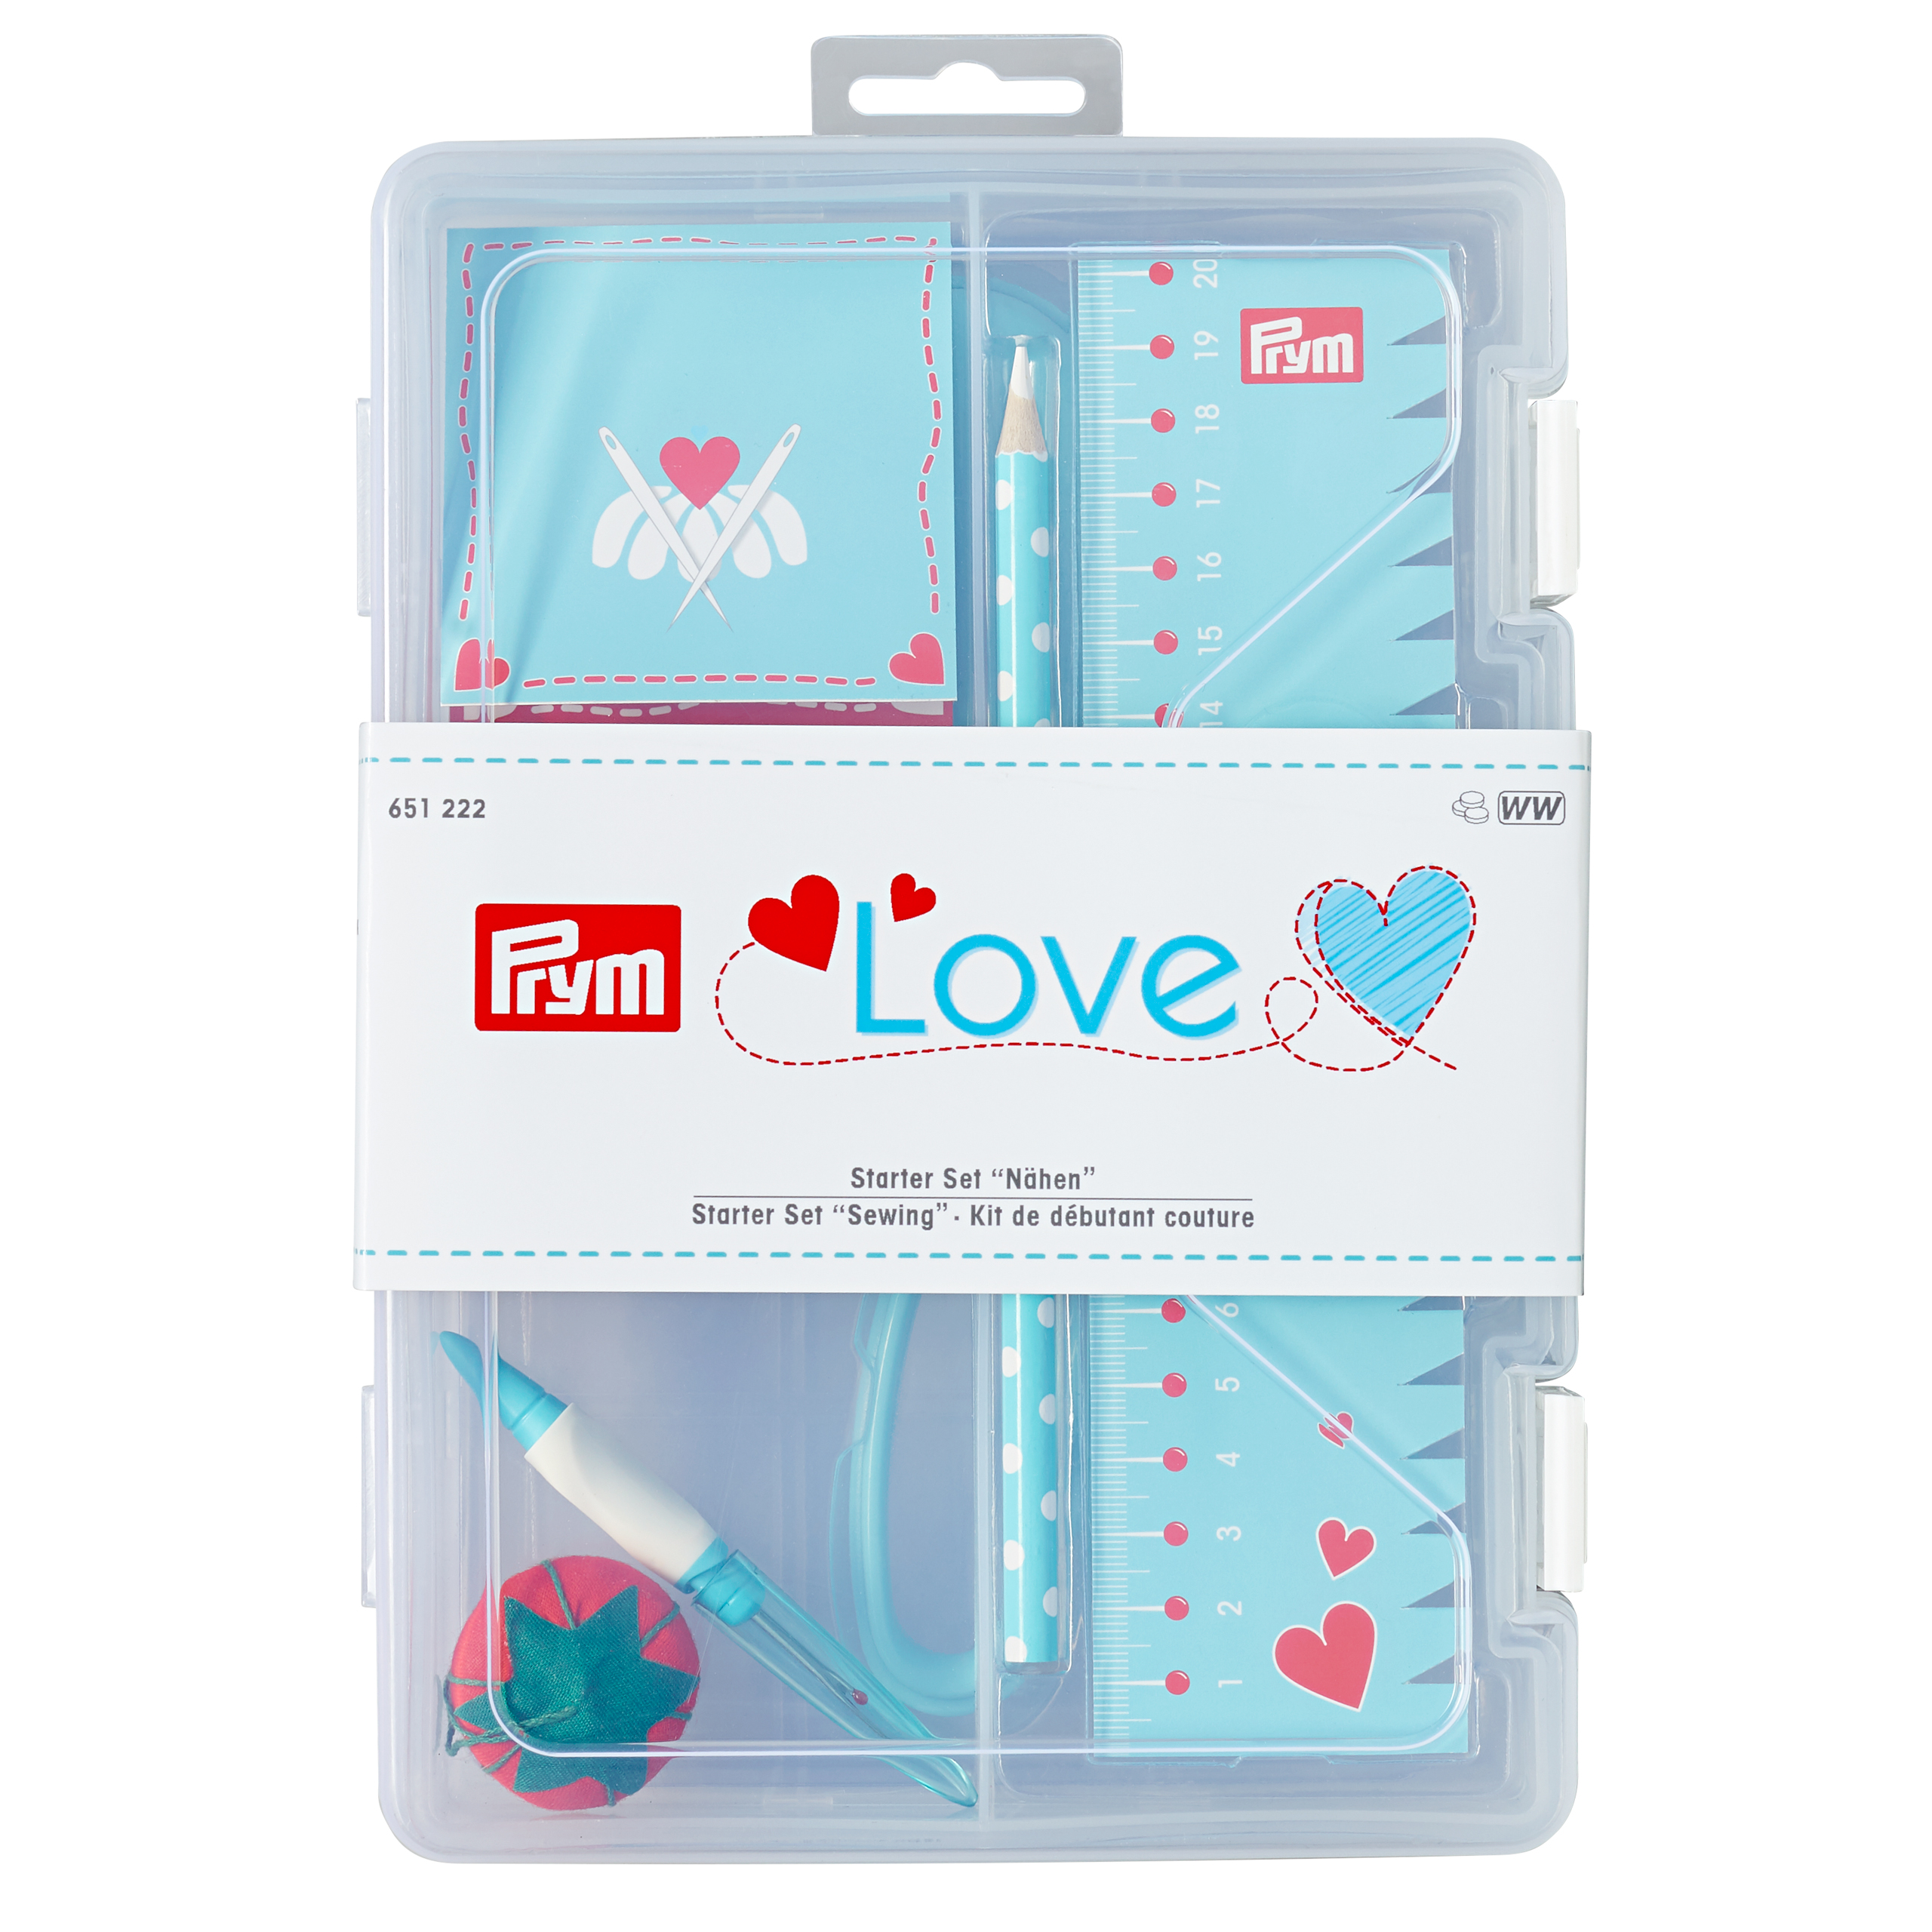 Prym LOVE - Kit de débutant Couture